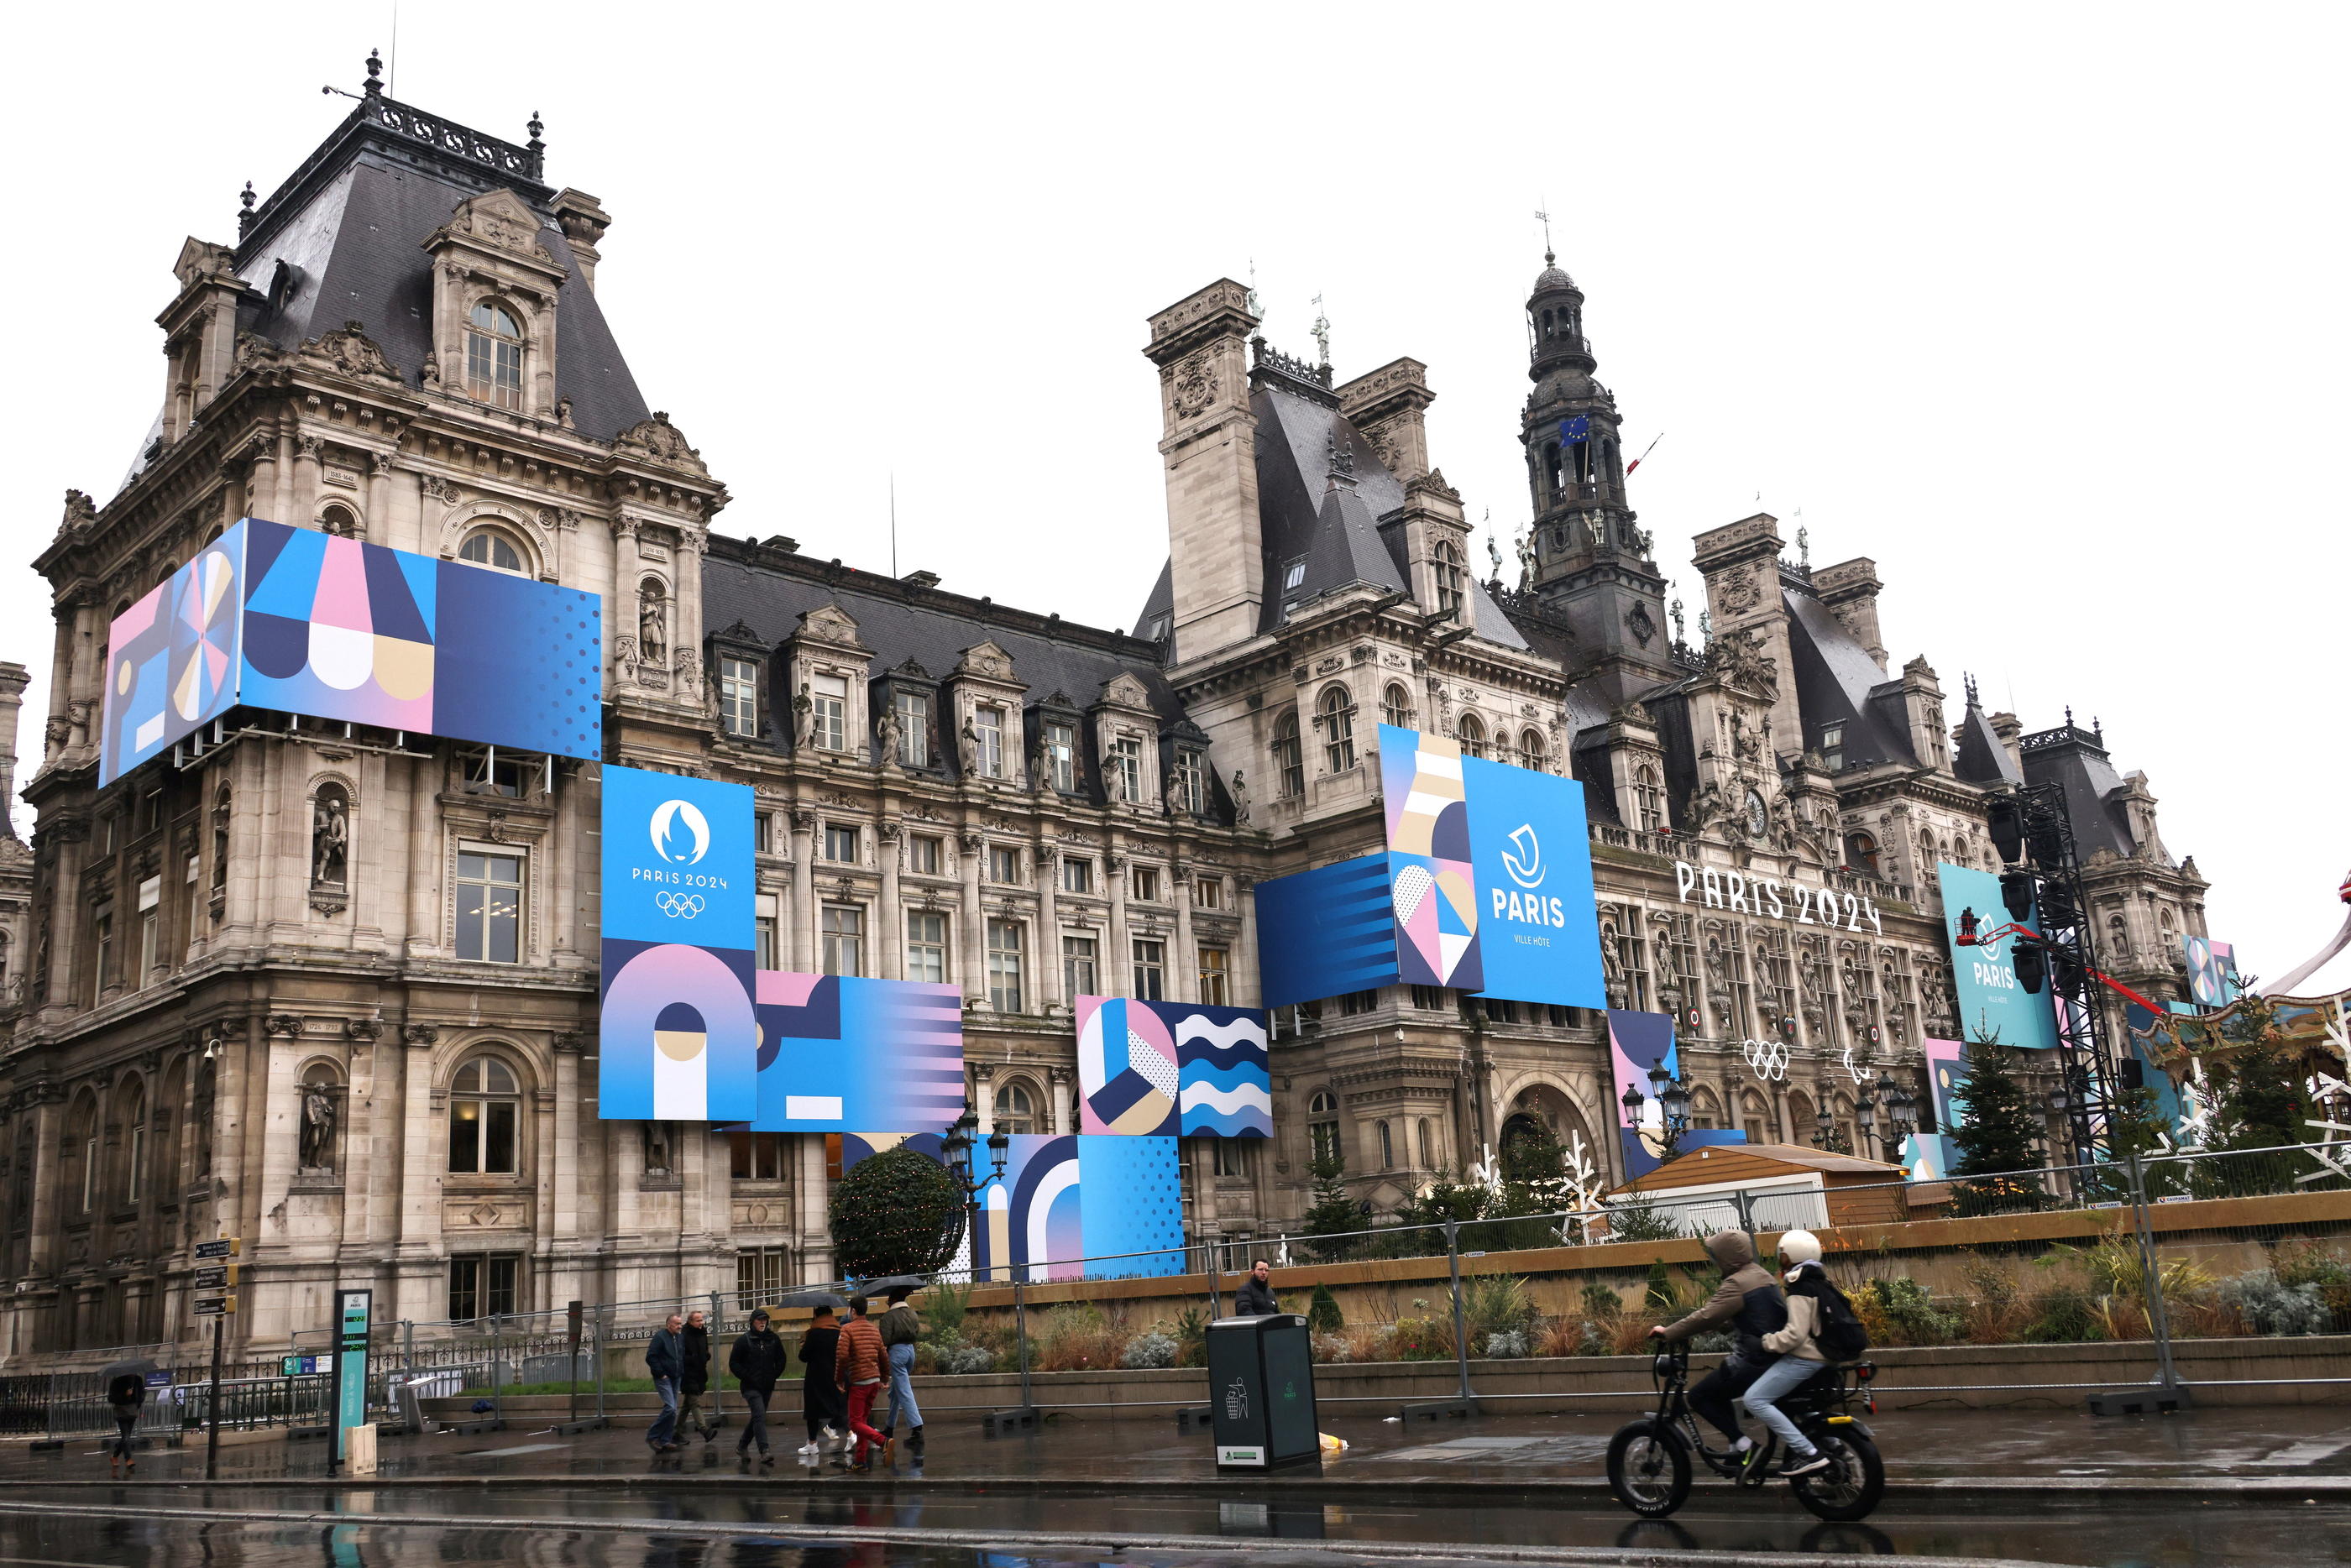 Paris (IVe), lundi 27 novembre. La façade de l'Hôtel de ville a été redécorée aux couleurs des Jeux Olympiques et Paralympiques de Paris 2024. LP/Delphine Goldsztejn